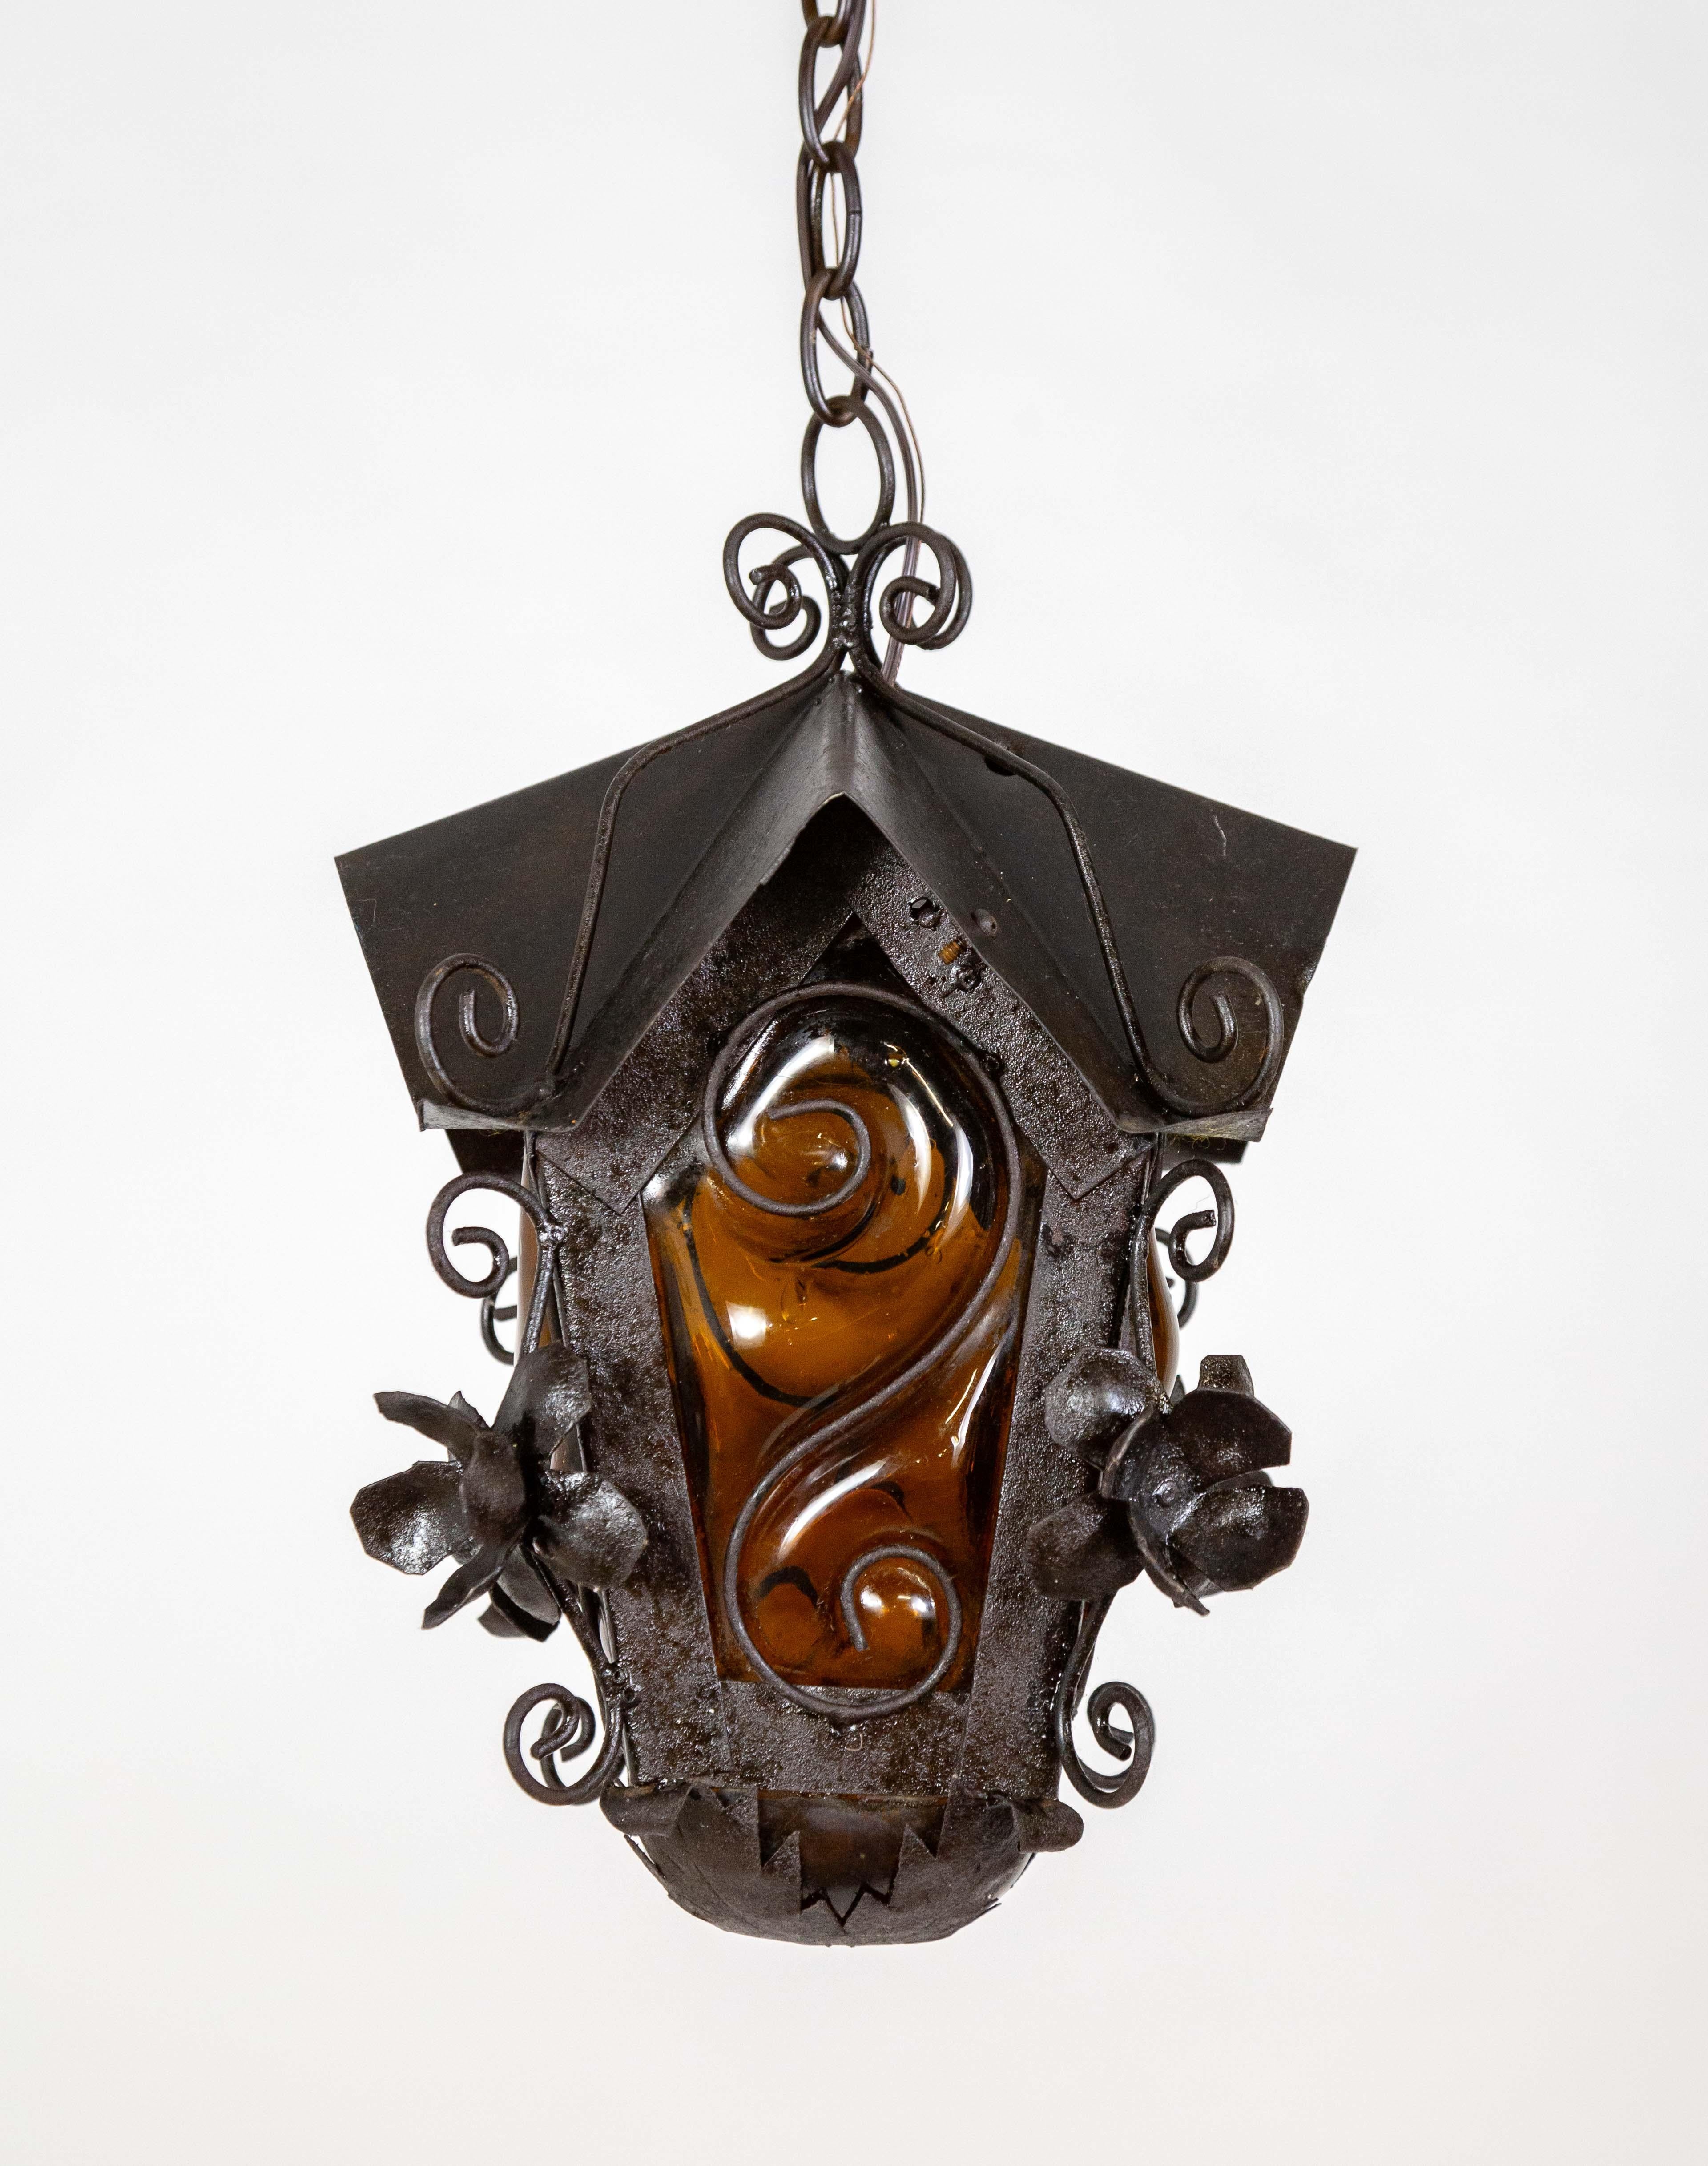 Lanterne suspendue en métal noir en forme de nichoir, datant du milieu du 20e siècle, d'inspiration gothique.  Il est orné de fleurs et de boucles entre les fenêtres. Les quatre fenêtres sont en verre soufflé ambré et forment une courbe en S. La